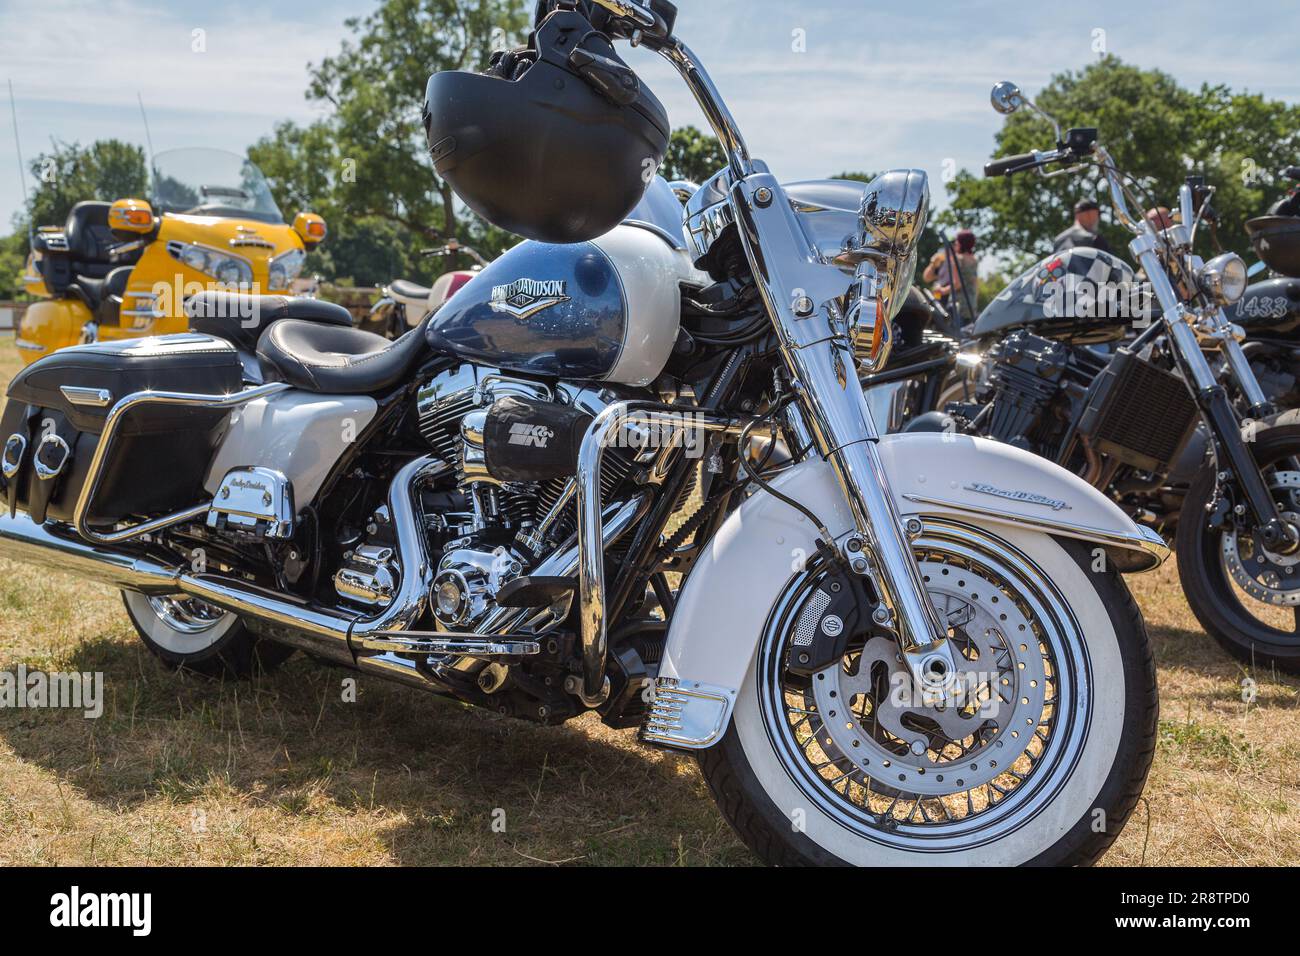 Legendäre Harley Davidson Road King mit weißen Wandreifen und einem verchromten Motor. Eine königliche Präsenz in einer Motorradreihe bei einer Motorrad-Rallye. Stockfoto